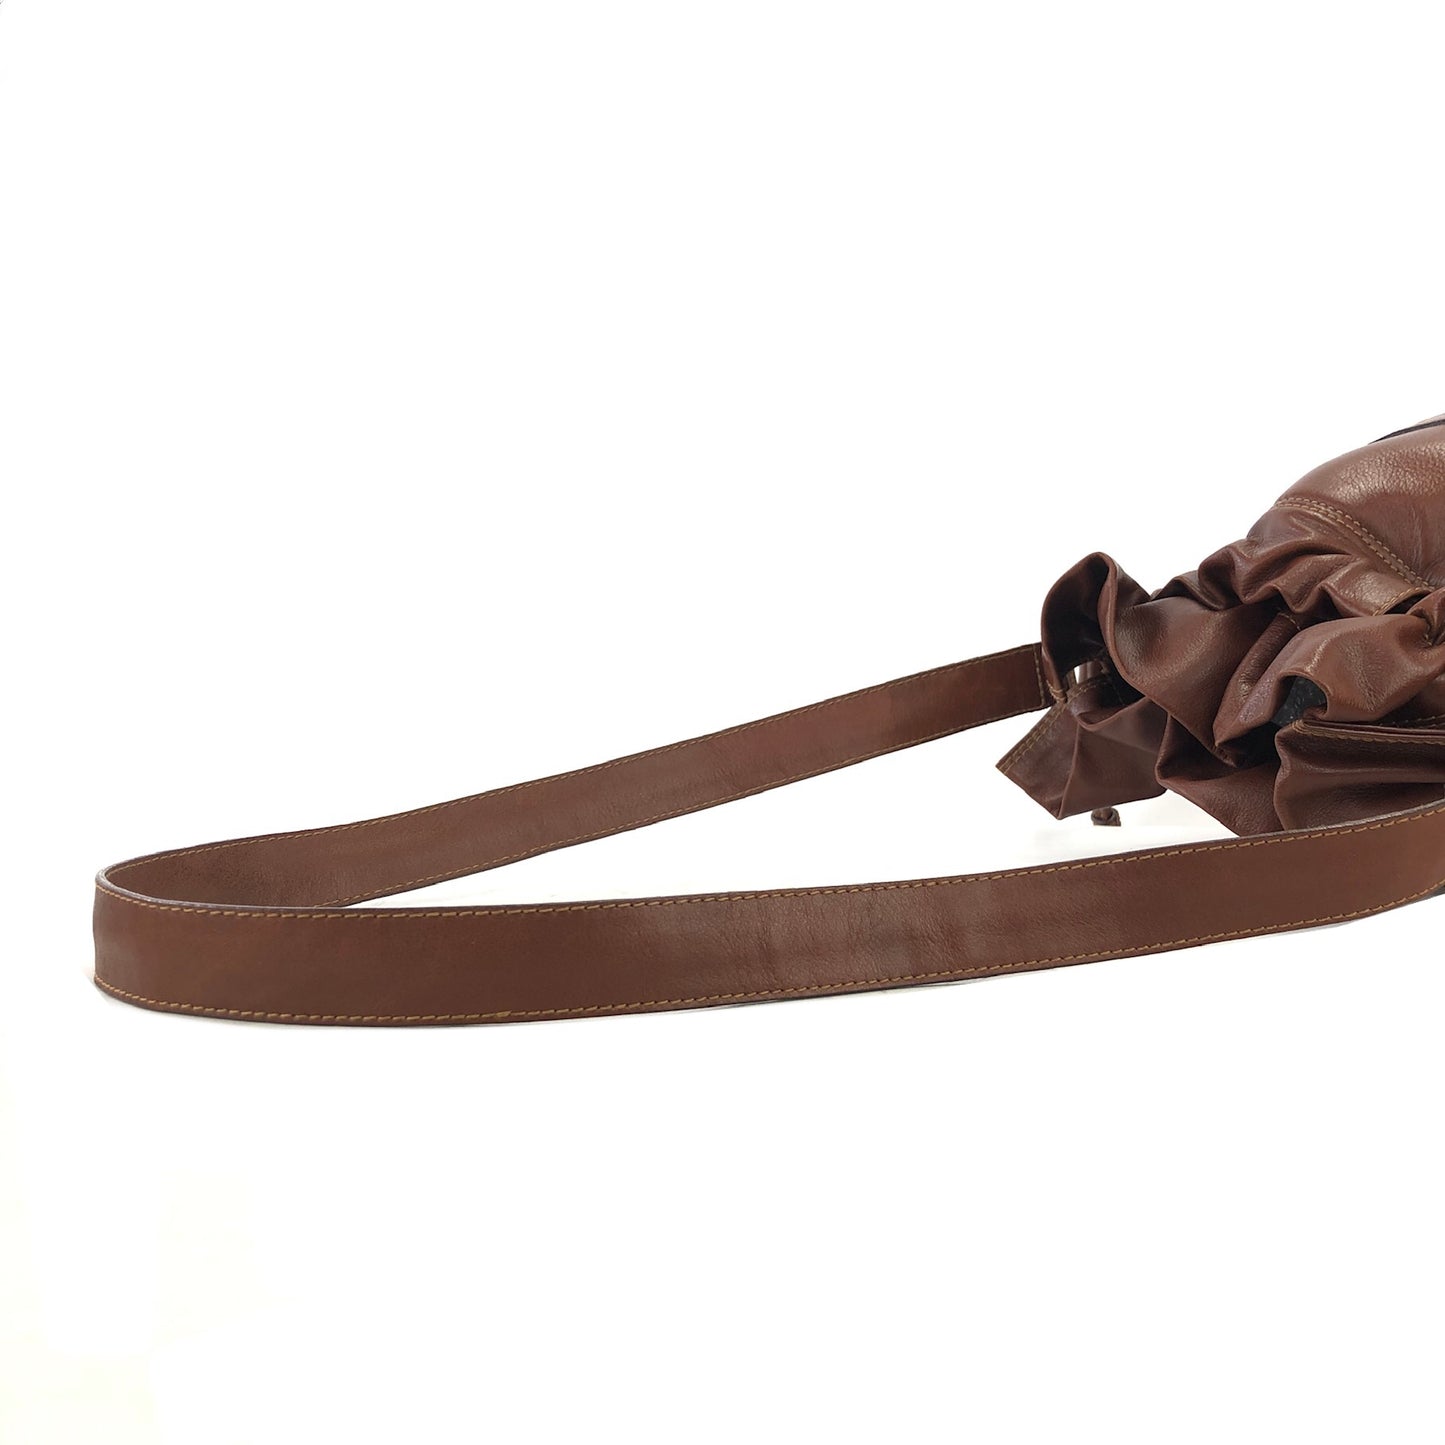 CELINE Blason Leather Drawstring Shoulder bag Brown Vintage 2hgzv7